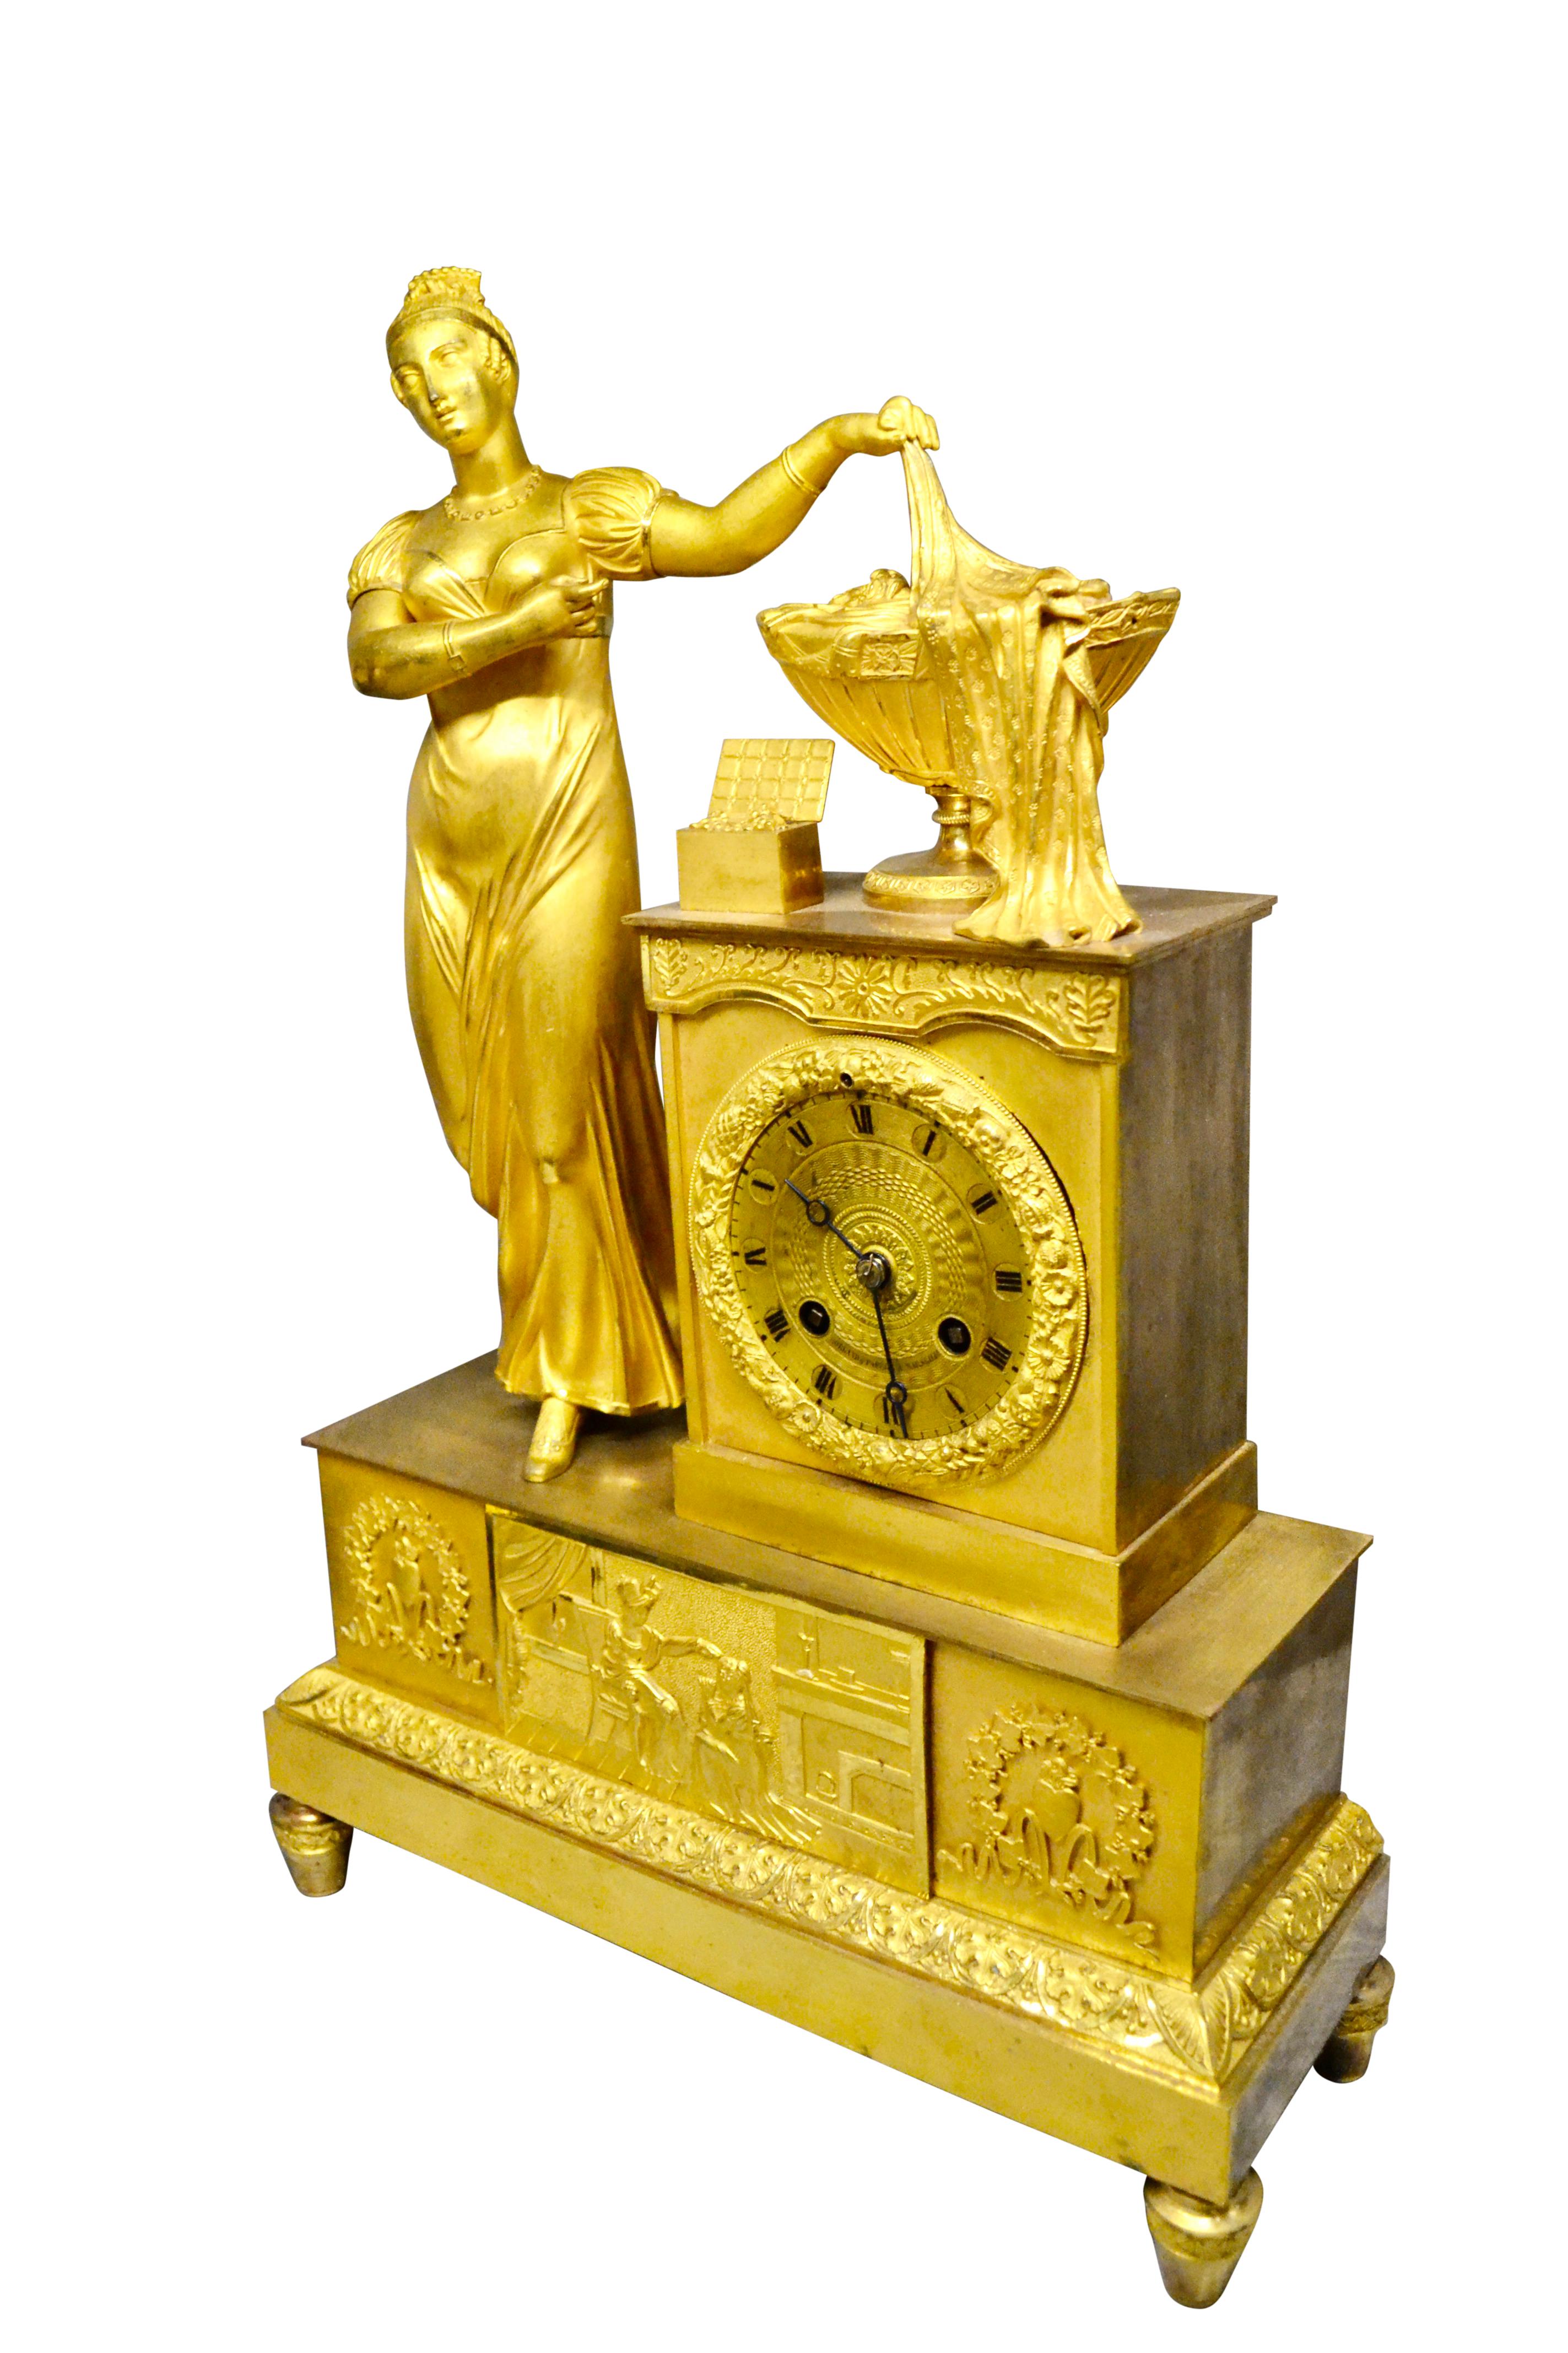 Eine spätfranzösische Empire-Manteluhr aus vergoldeter Bronze, die eine stehende klassizistische Dame auf der linken Seite des Uhrensockels darstellt, die mit ihrem linken Arm ein Tuch hält, das den Inhalt einer vergoldeten Urne verdeckt. Die Urne